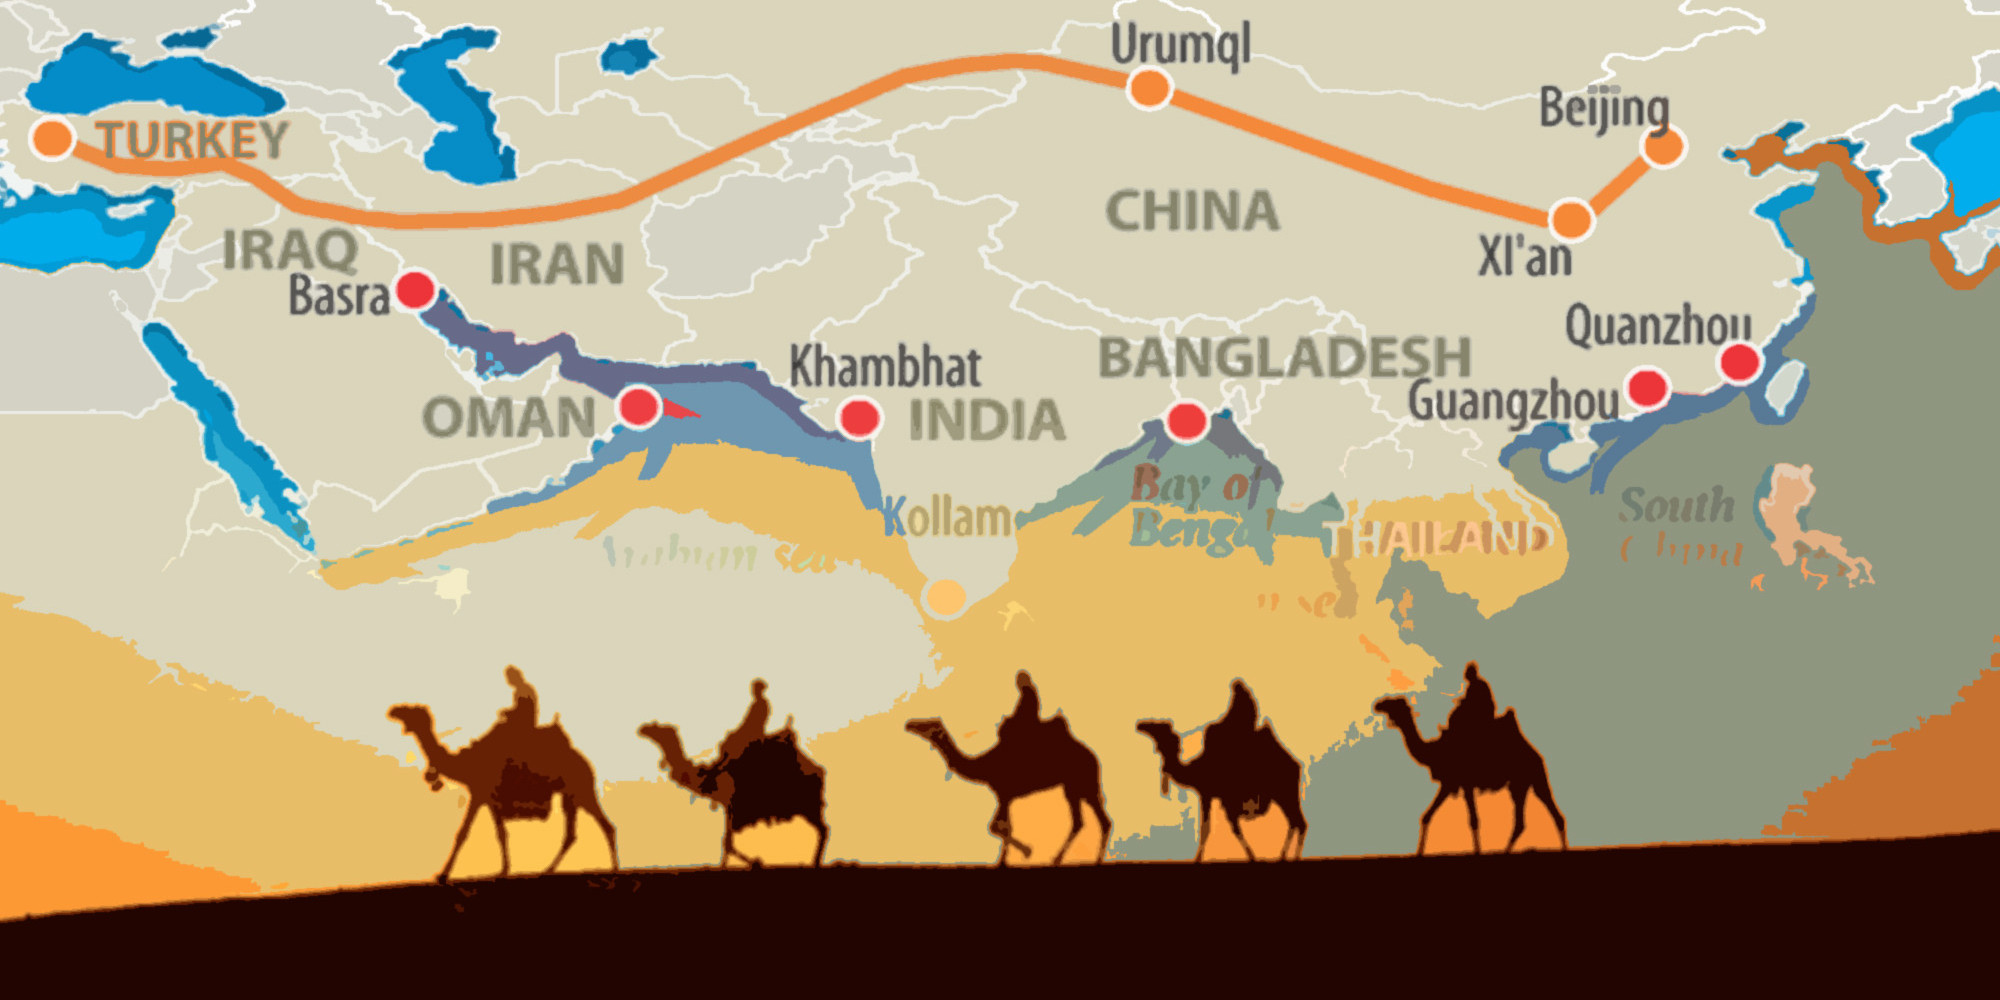 Tarihî İpek Yolu Projesi Ve Doğu Türkistan | Türktoyu